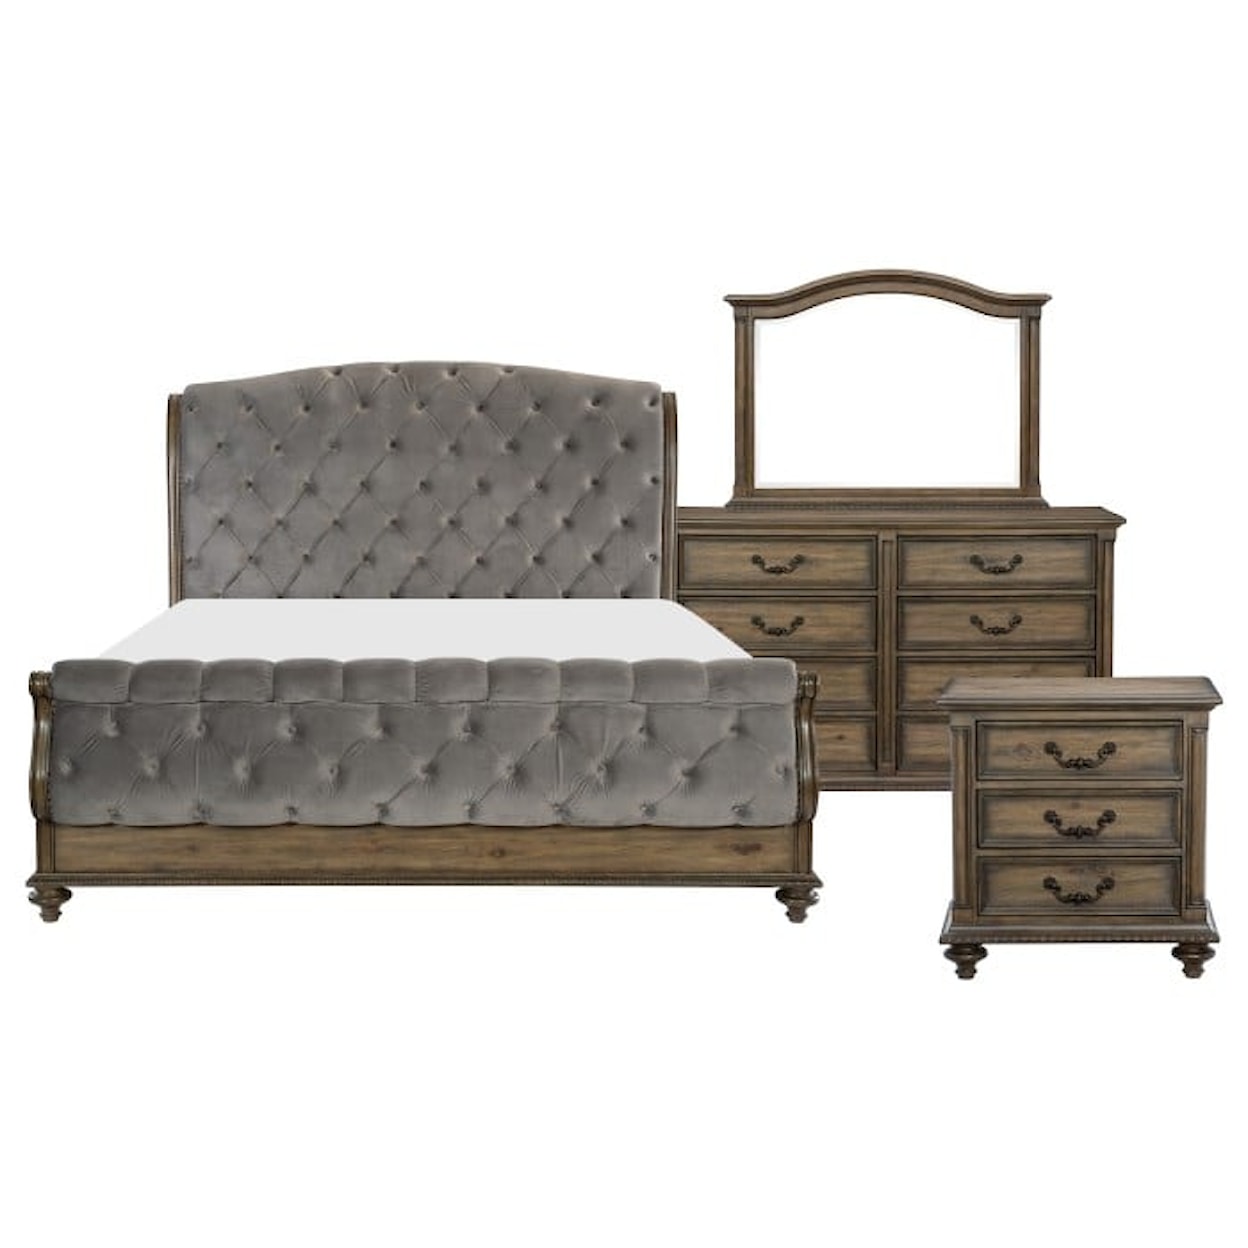 Homelegance Furniture Rachelle 4-Piece Queen Bedroom Set